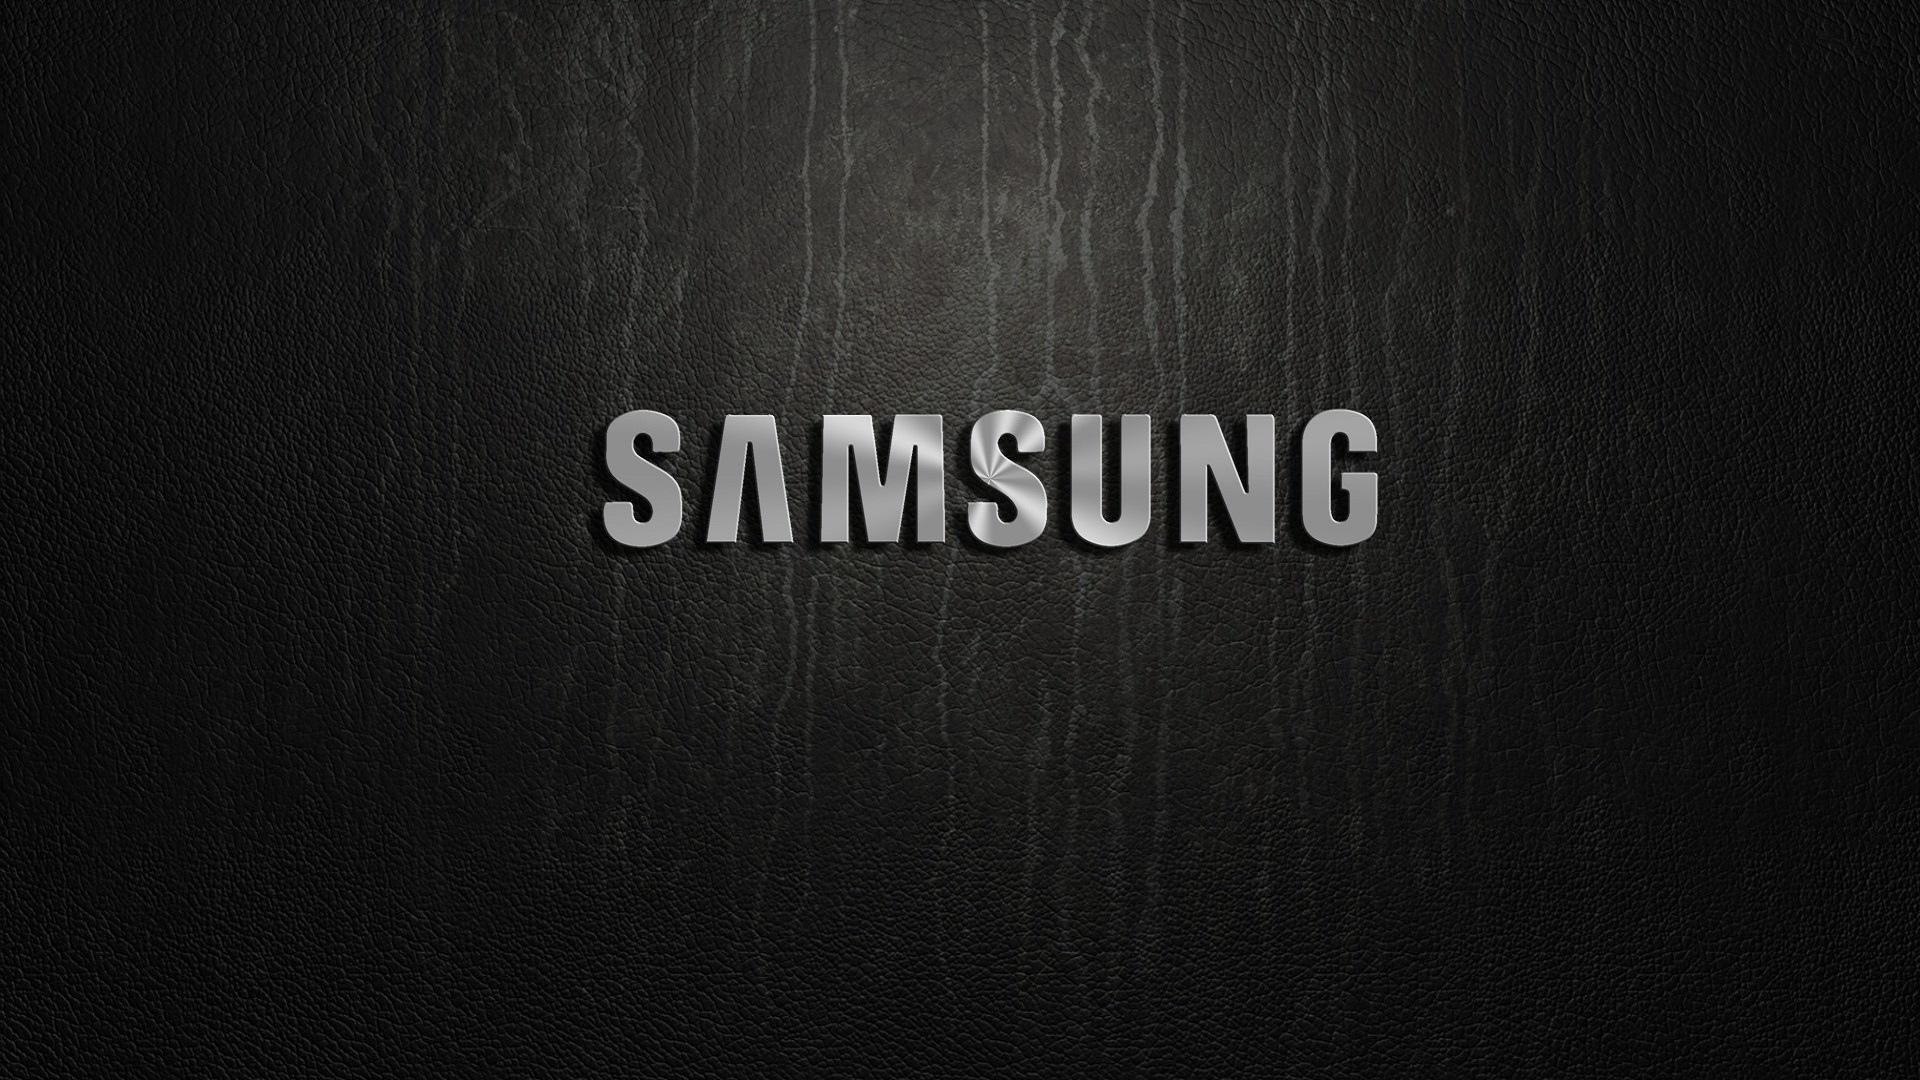 Samsung може відмовитись від флагманської лінійки смартфонів